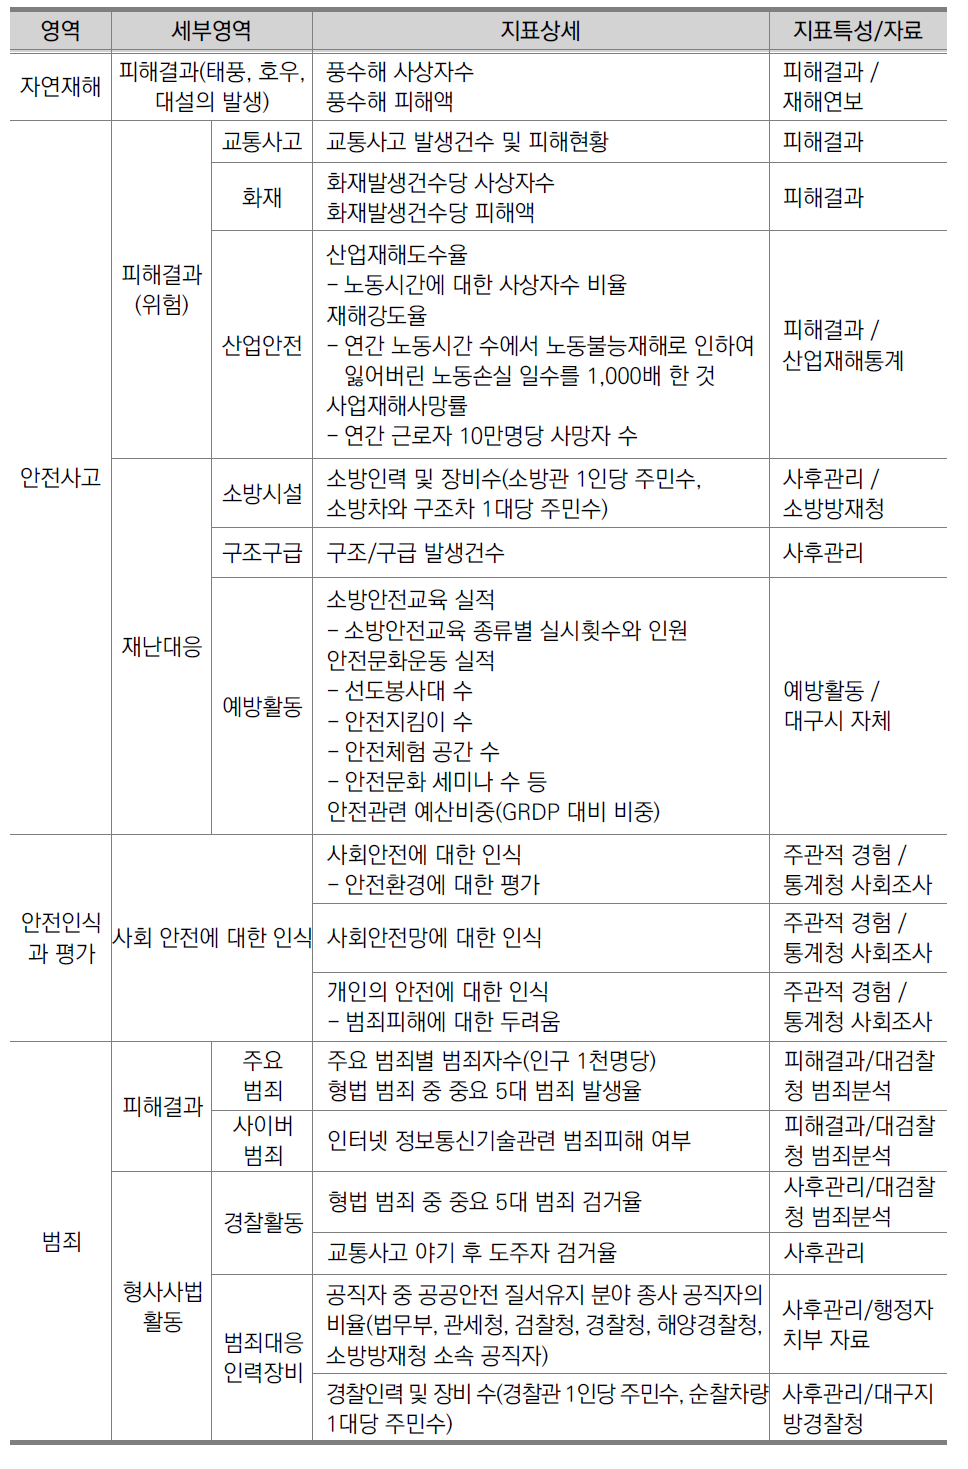 대구광역시 2014 대구사회지표 안전관련 부문 지표체계 재분류